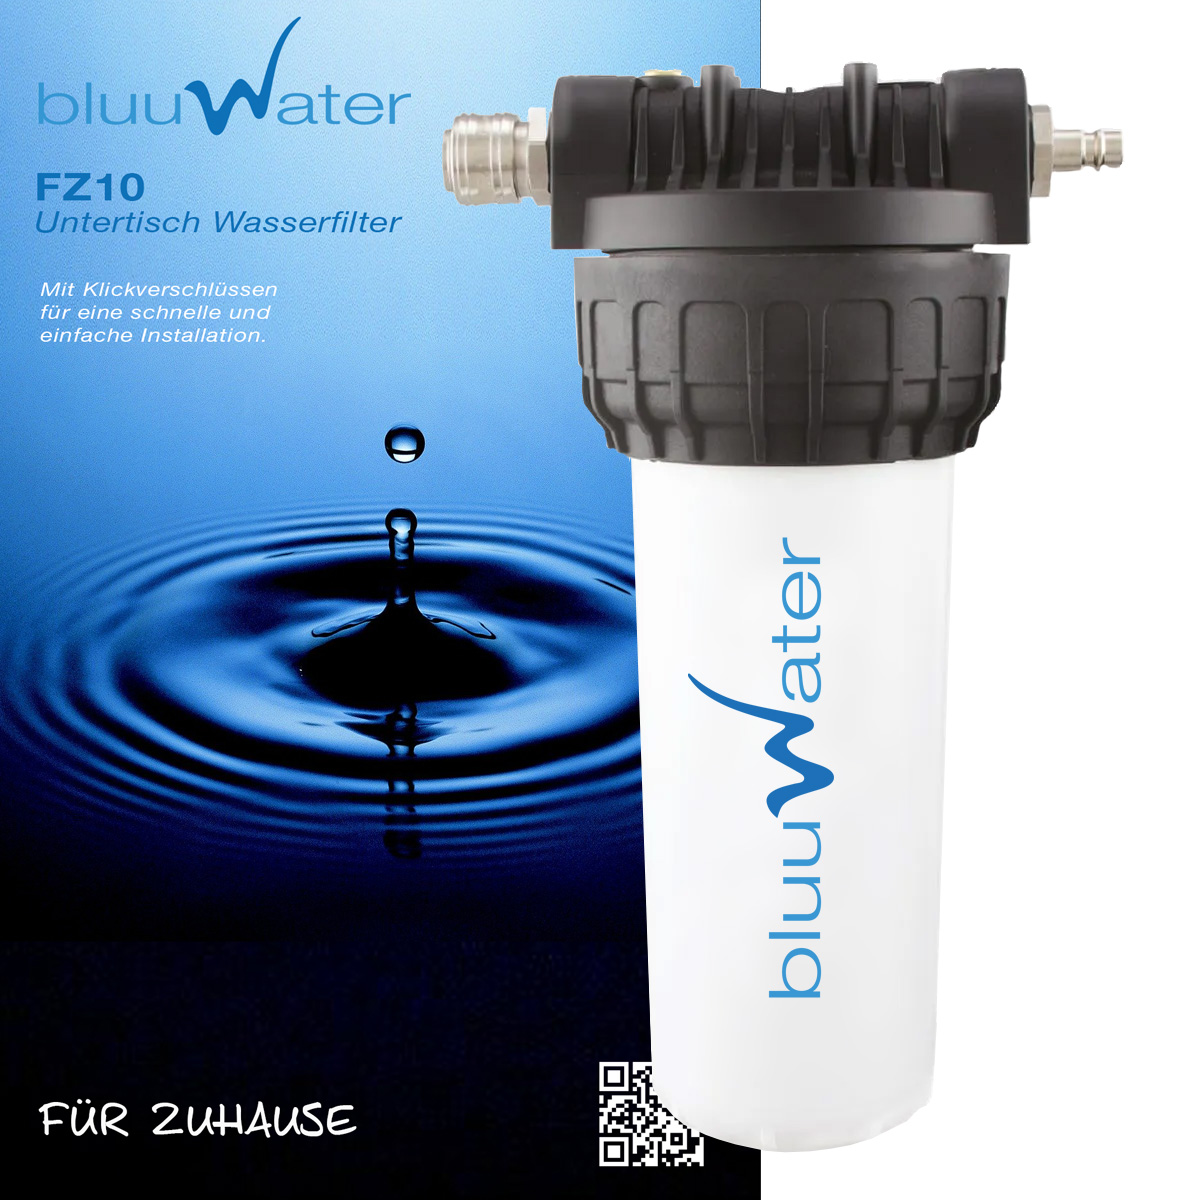 bluuwater FZ10 Untertisch Wasserfilter